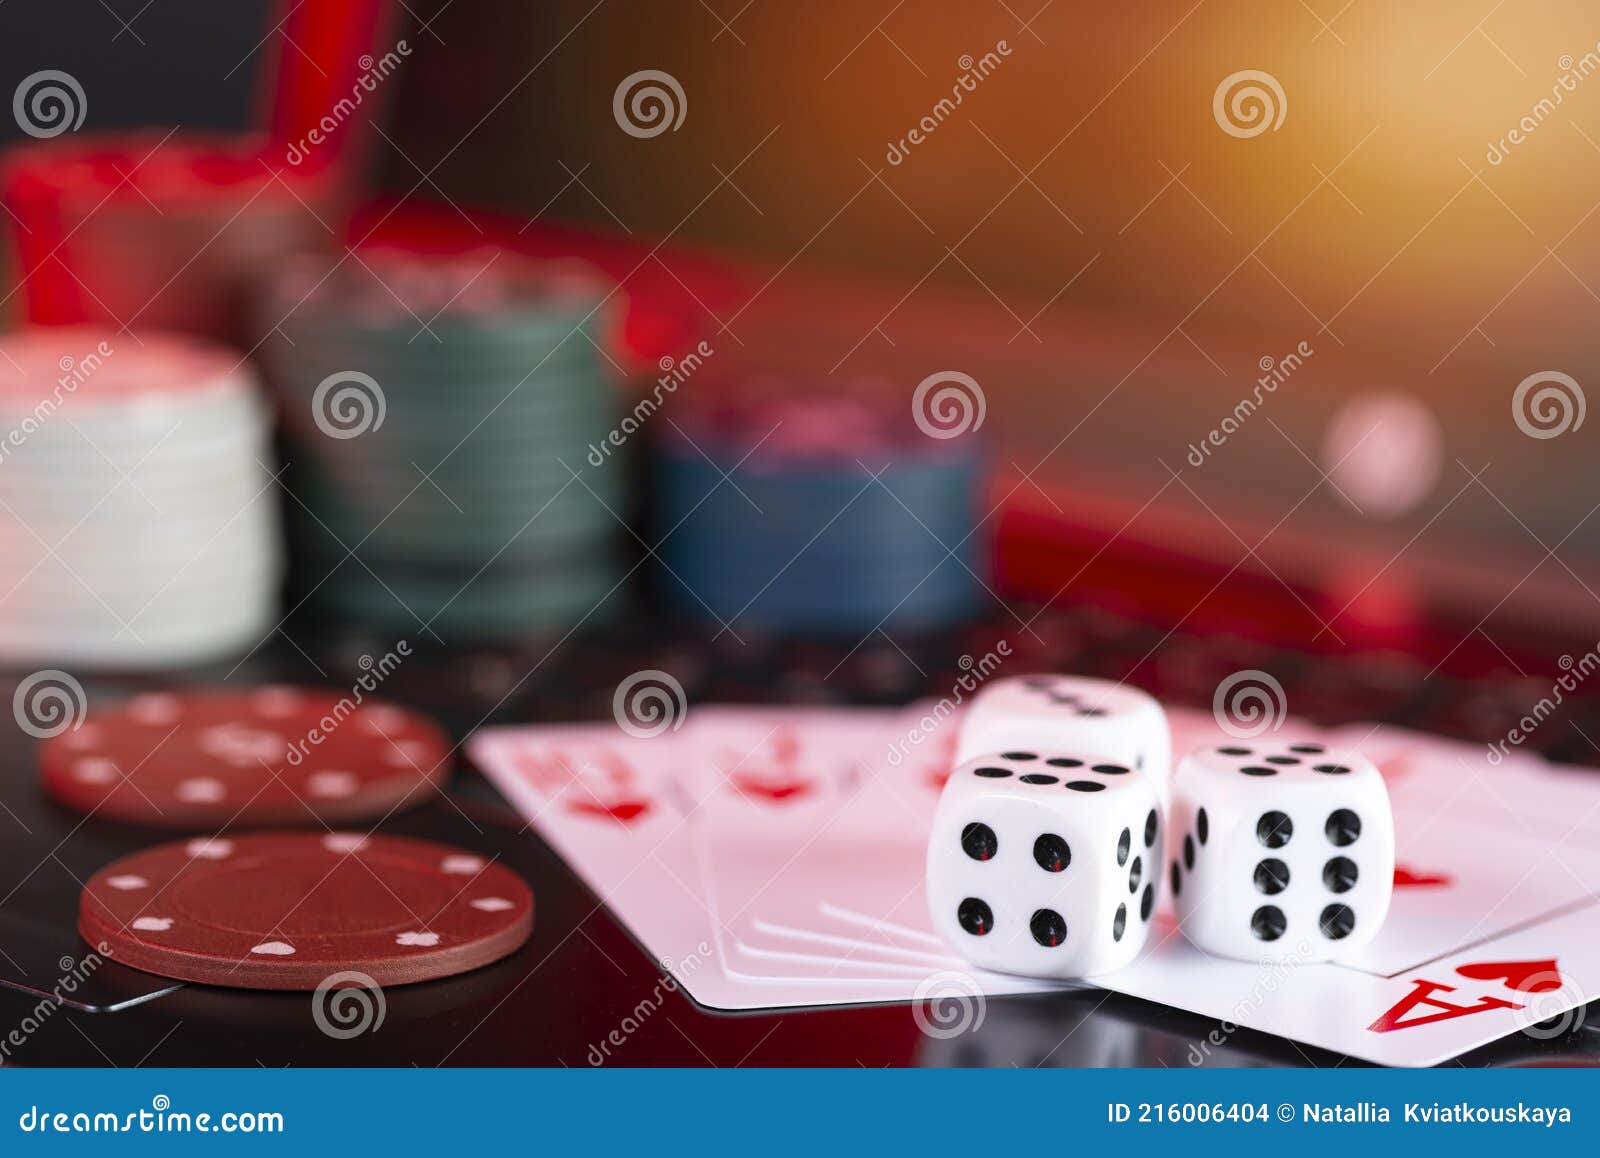 Plataforma de jogos online, casino e negócios de jogos de azar. cartas,  dados e peças de jogo multicoloridas no teclado do laptop